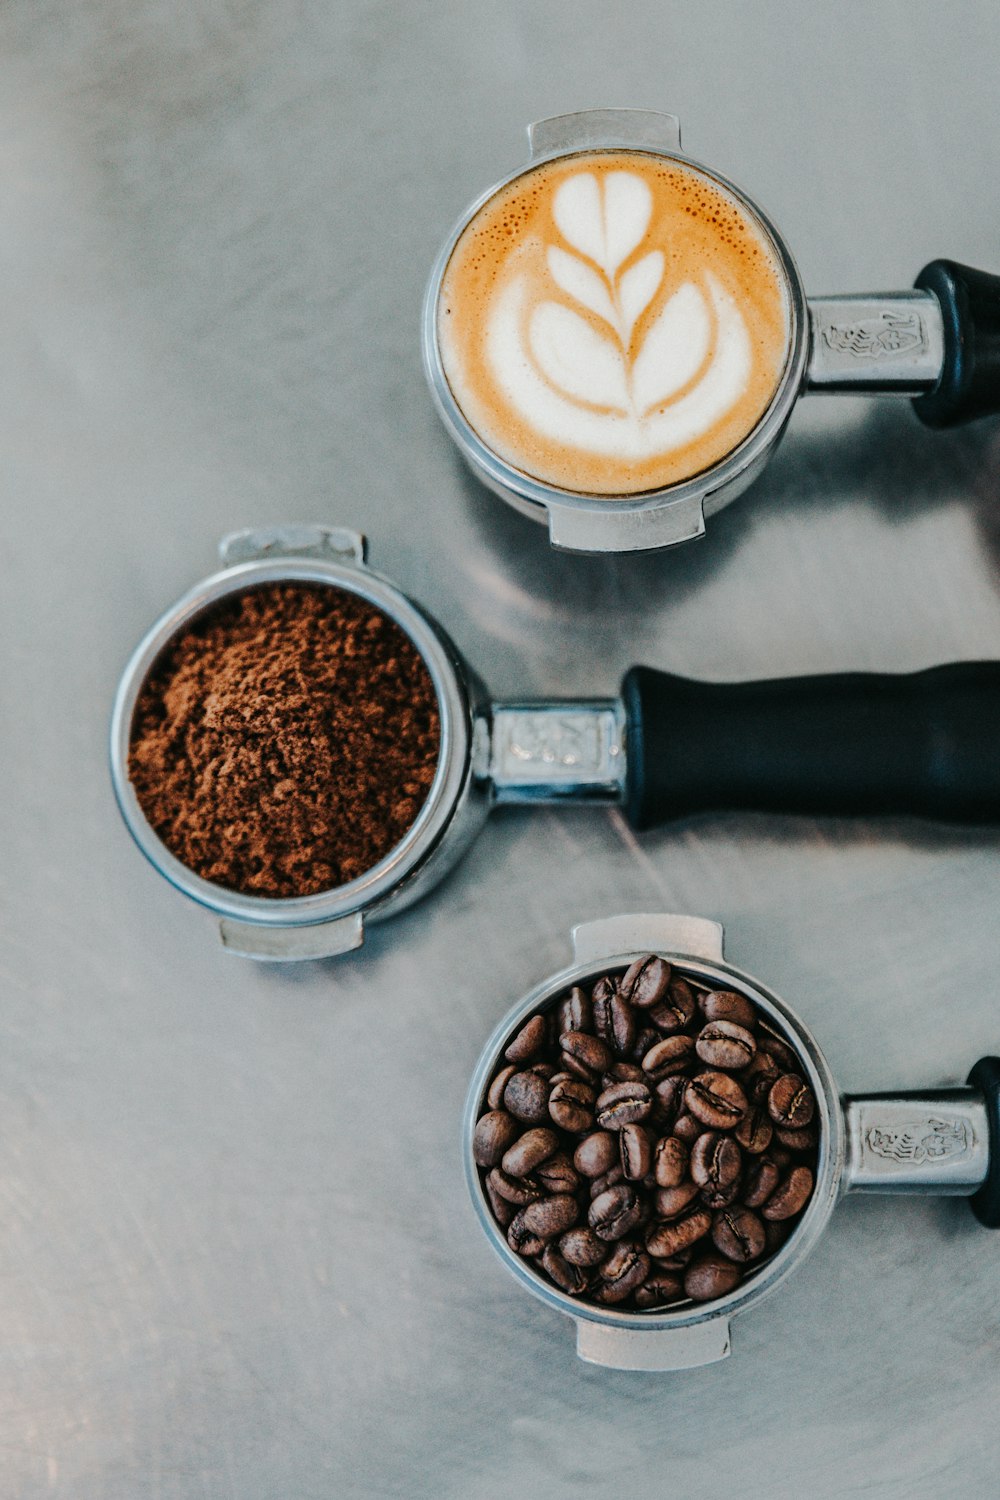 커피 라떼, 분쇄 커피, 커피 원두의 플랫 레이 사진